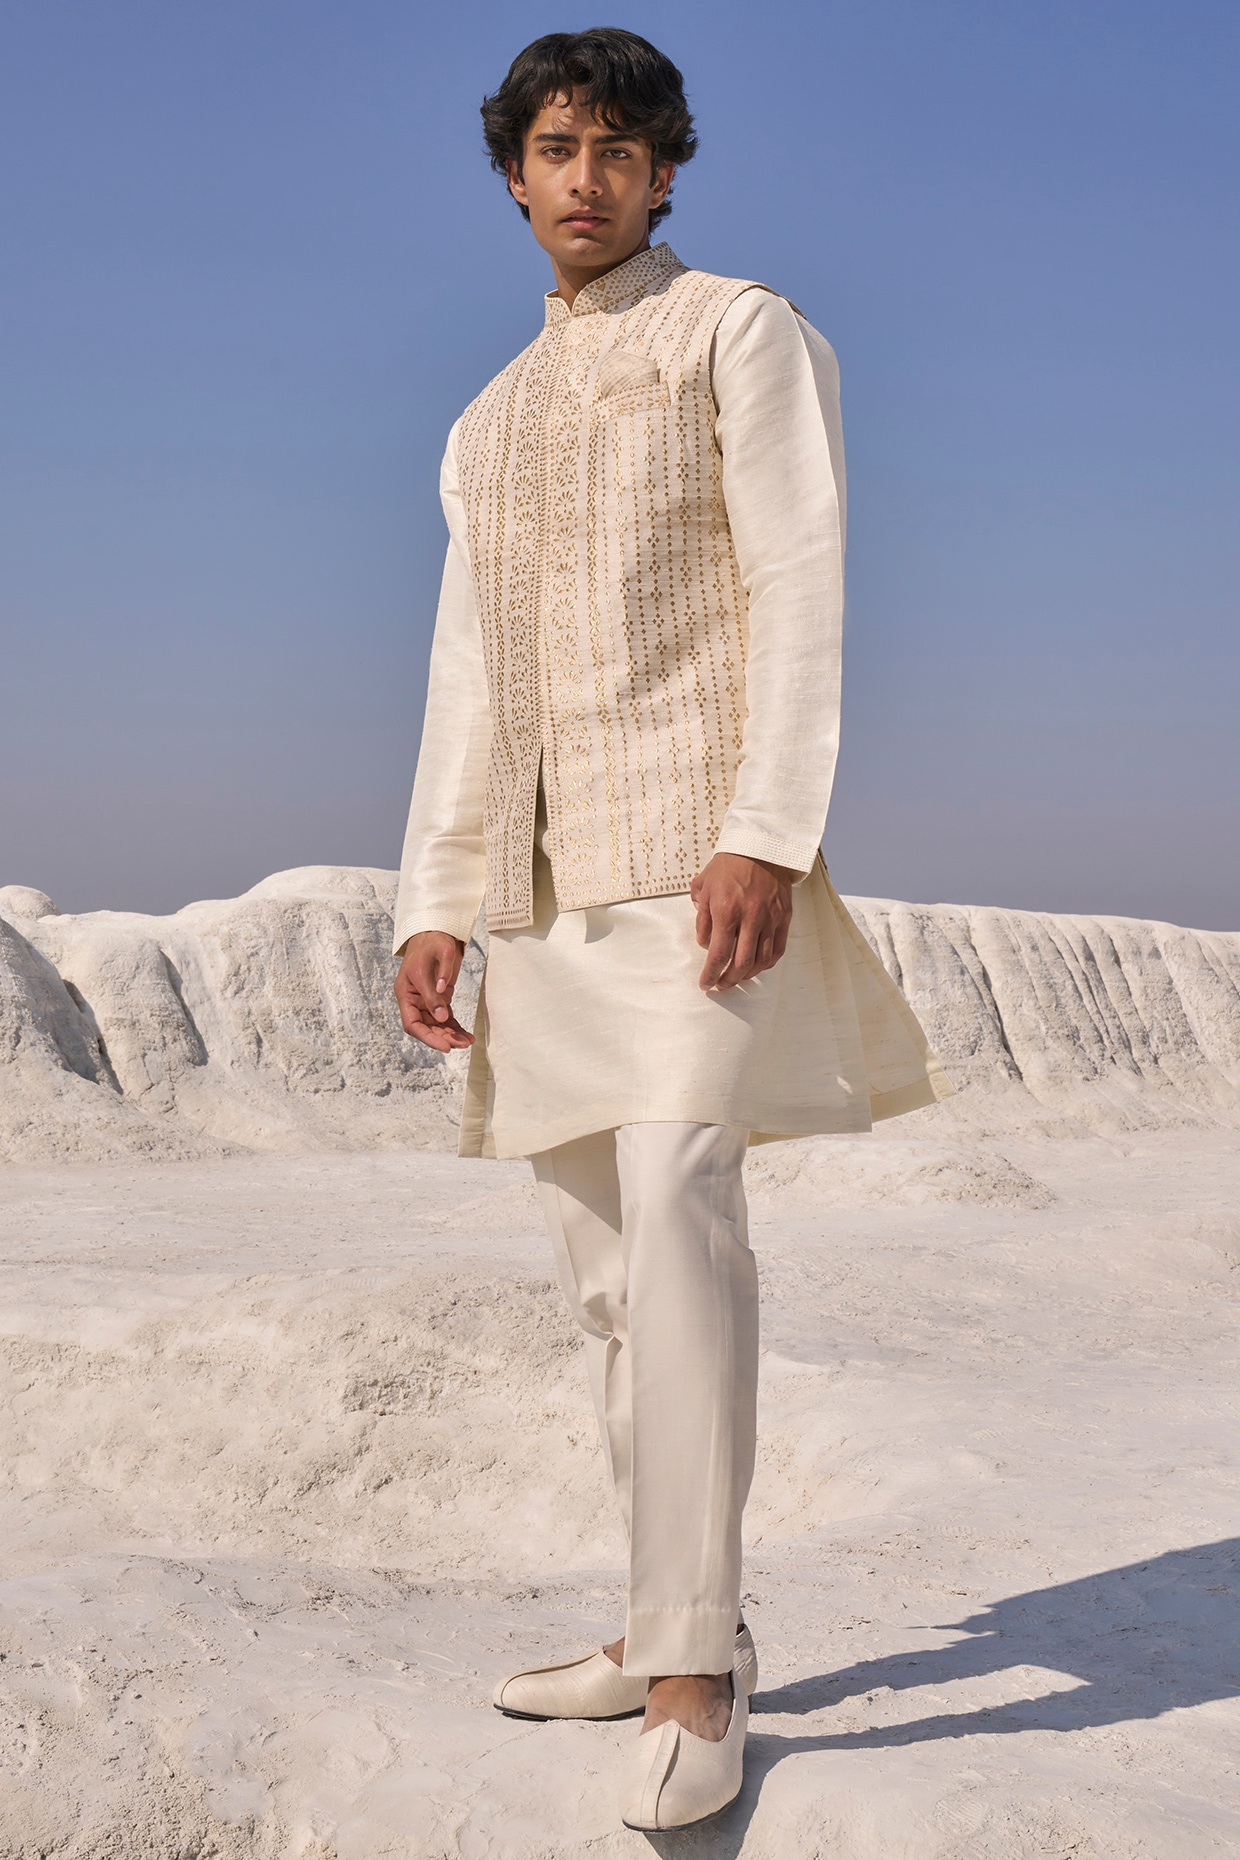 Explore Six Elegant Ways to Style Kurta Pajama with a Jacket | by Exotic  India | Medium